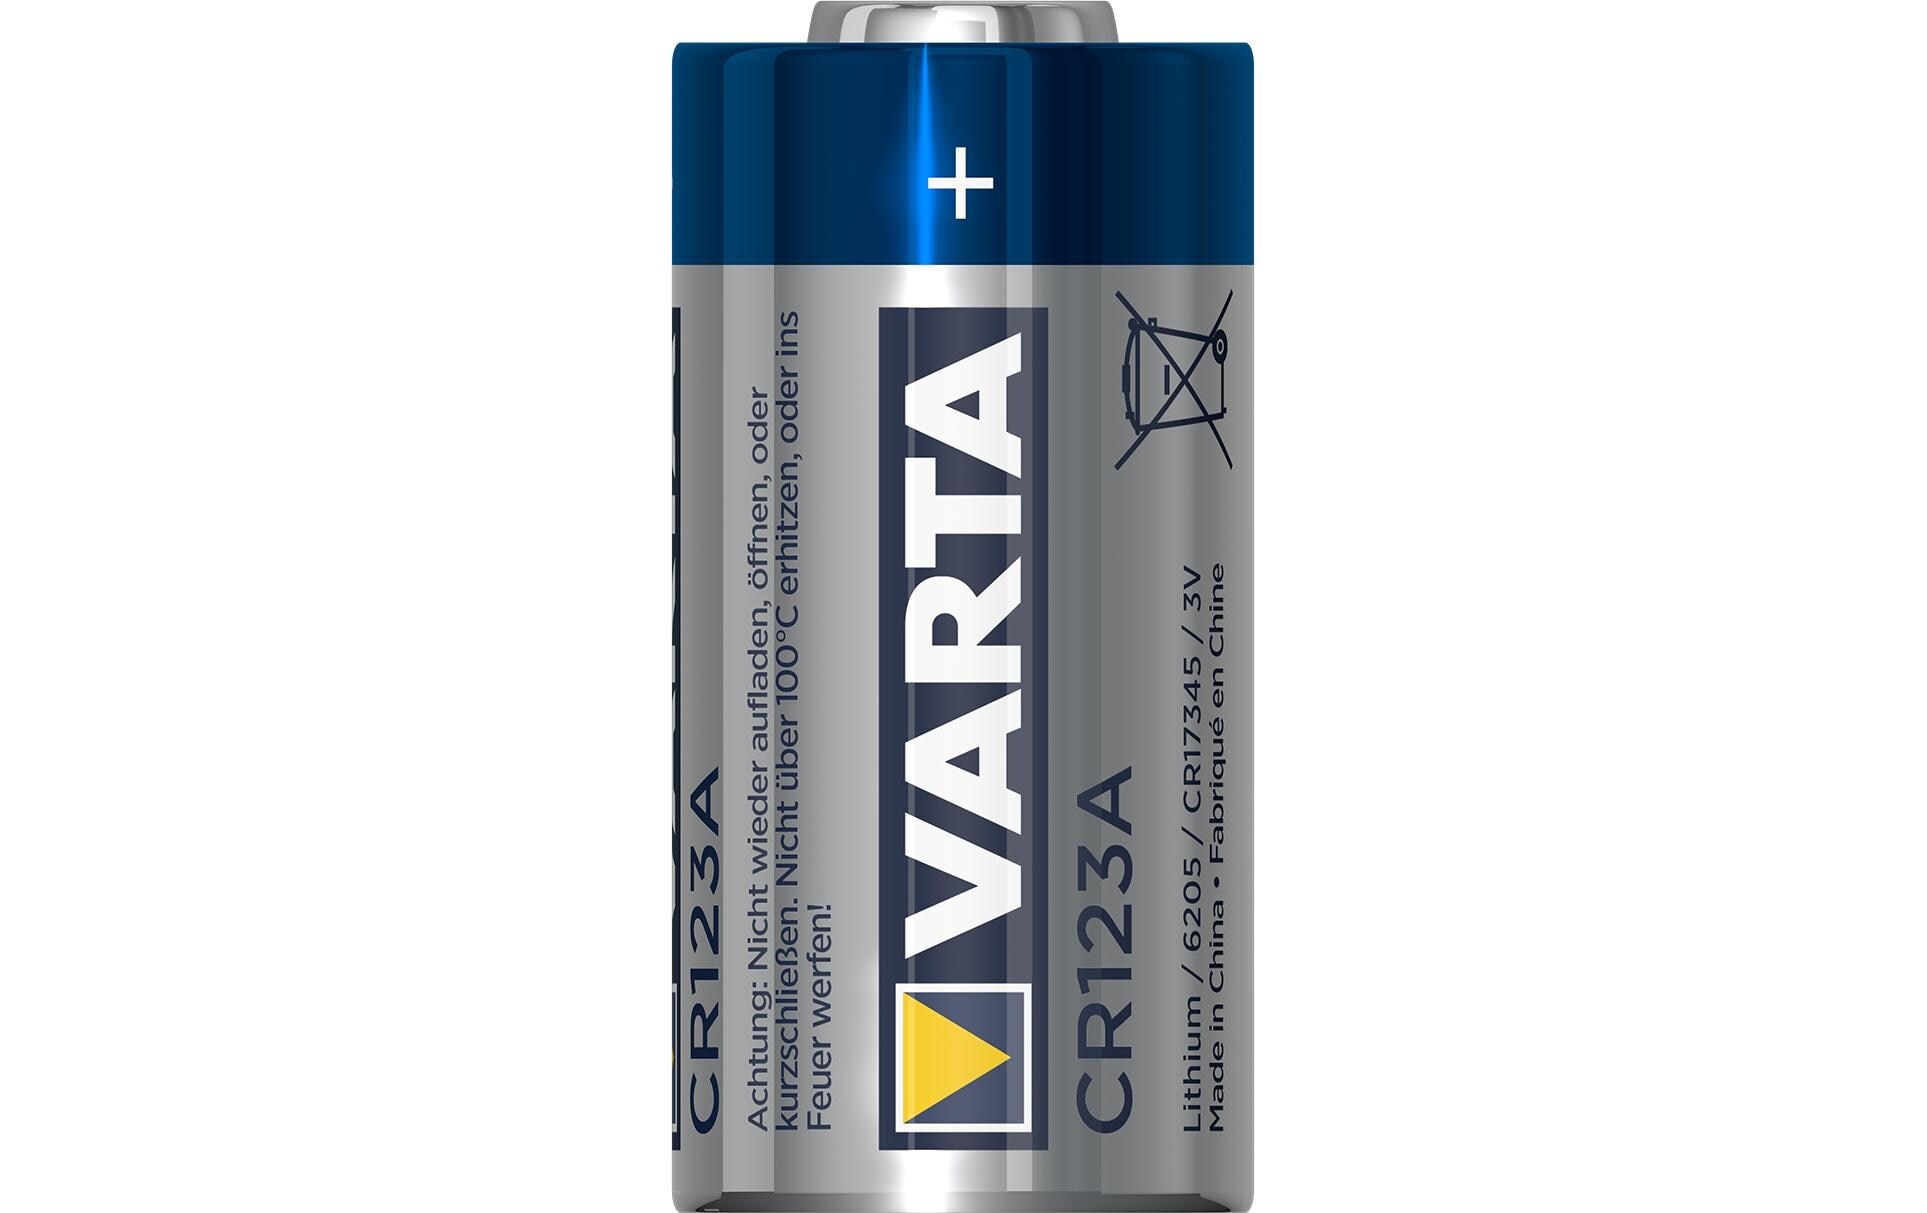 VARTA Batterie »CR123A 10 Stück«